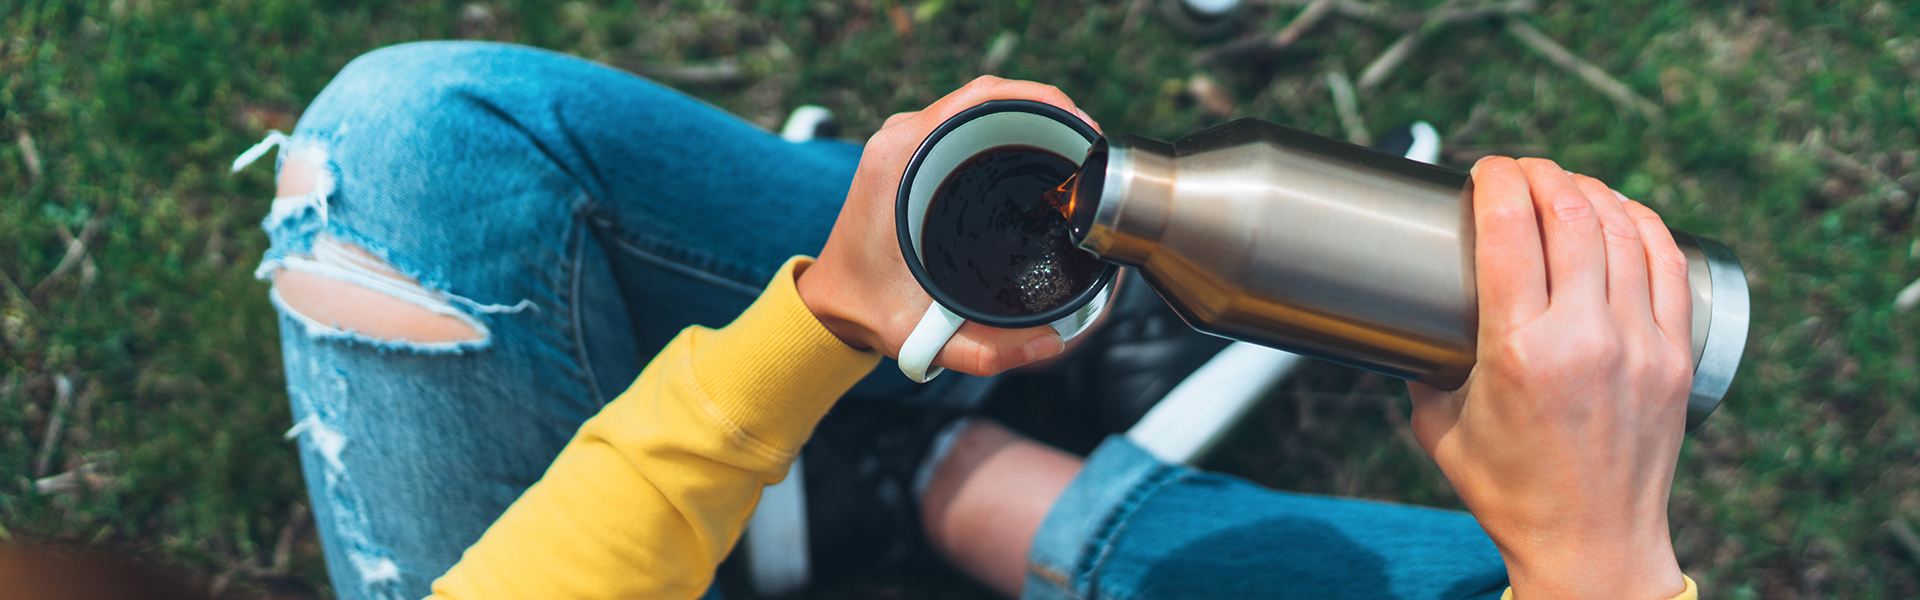 Mädchen gießt Kaffee aus Thermosflasche in Becher